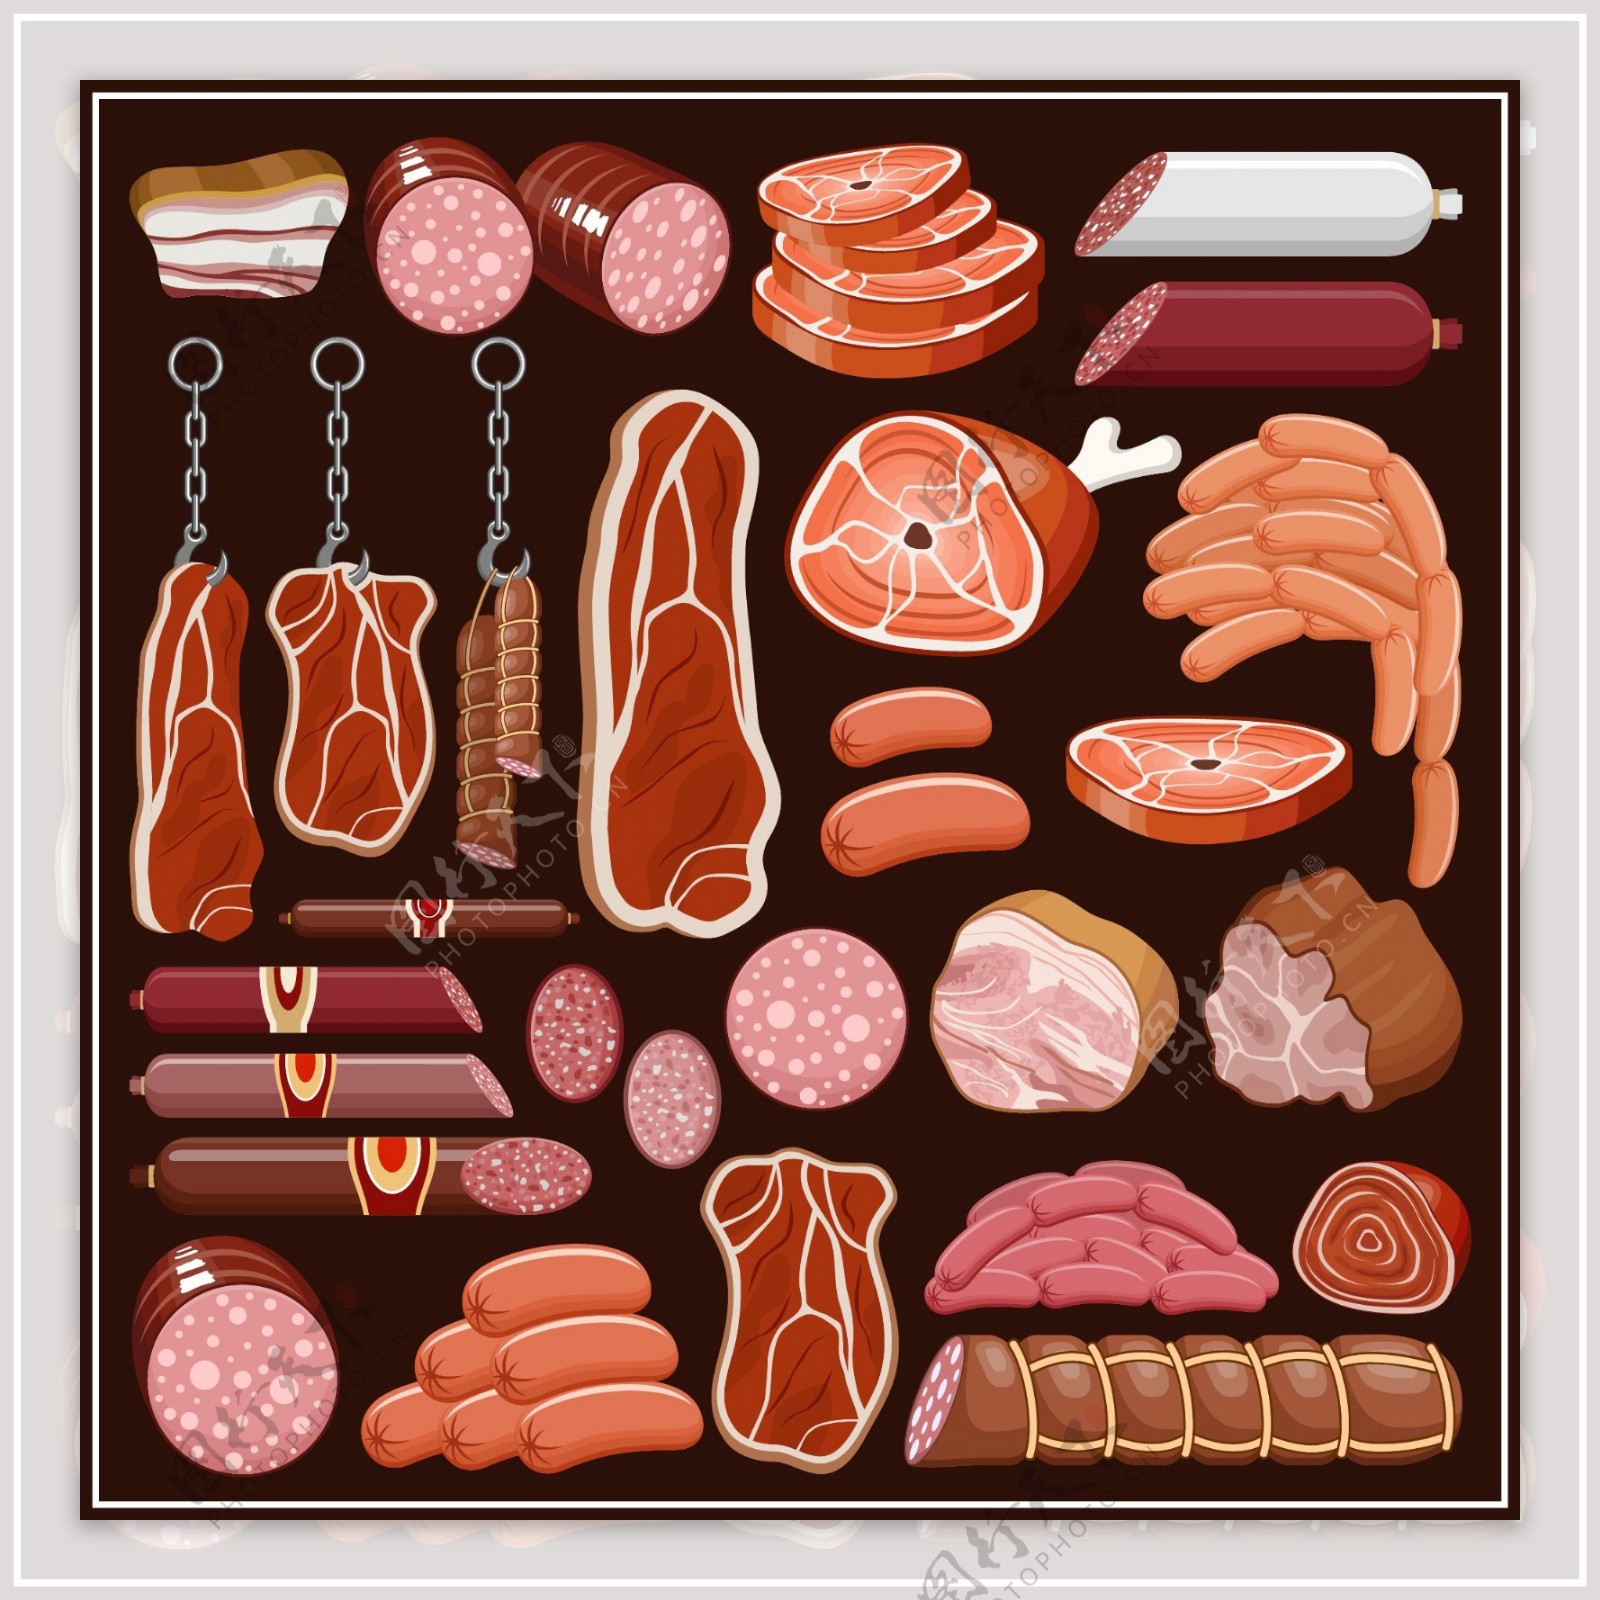 肉食图标肉类图片